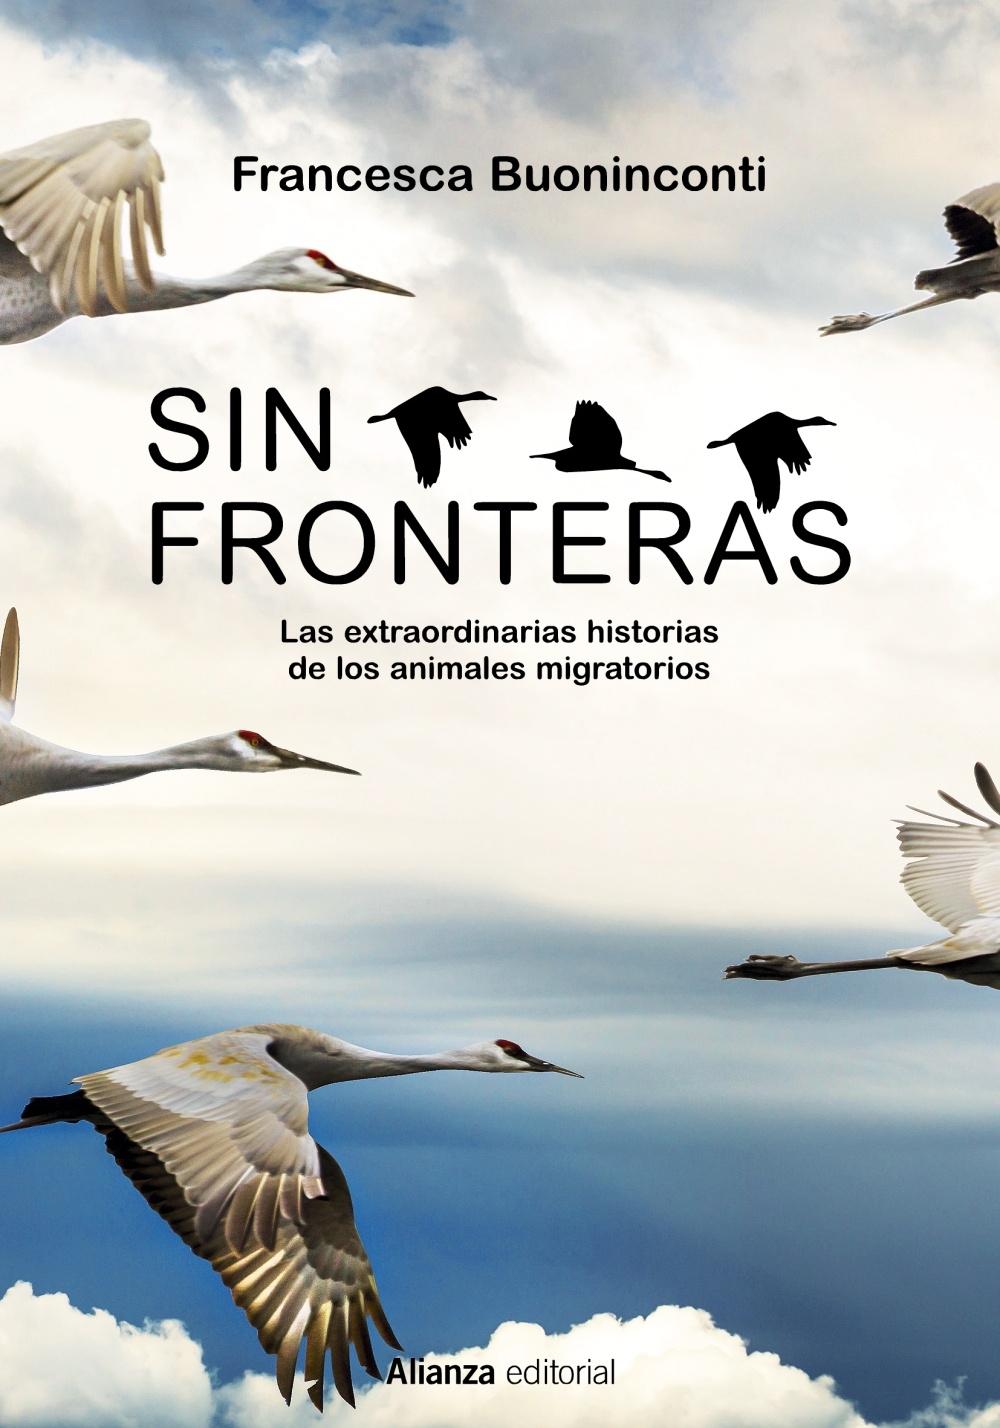 Sin fronteras "La extraordinaria historia de los animales migratorios"